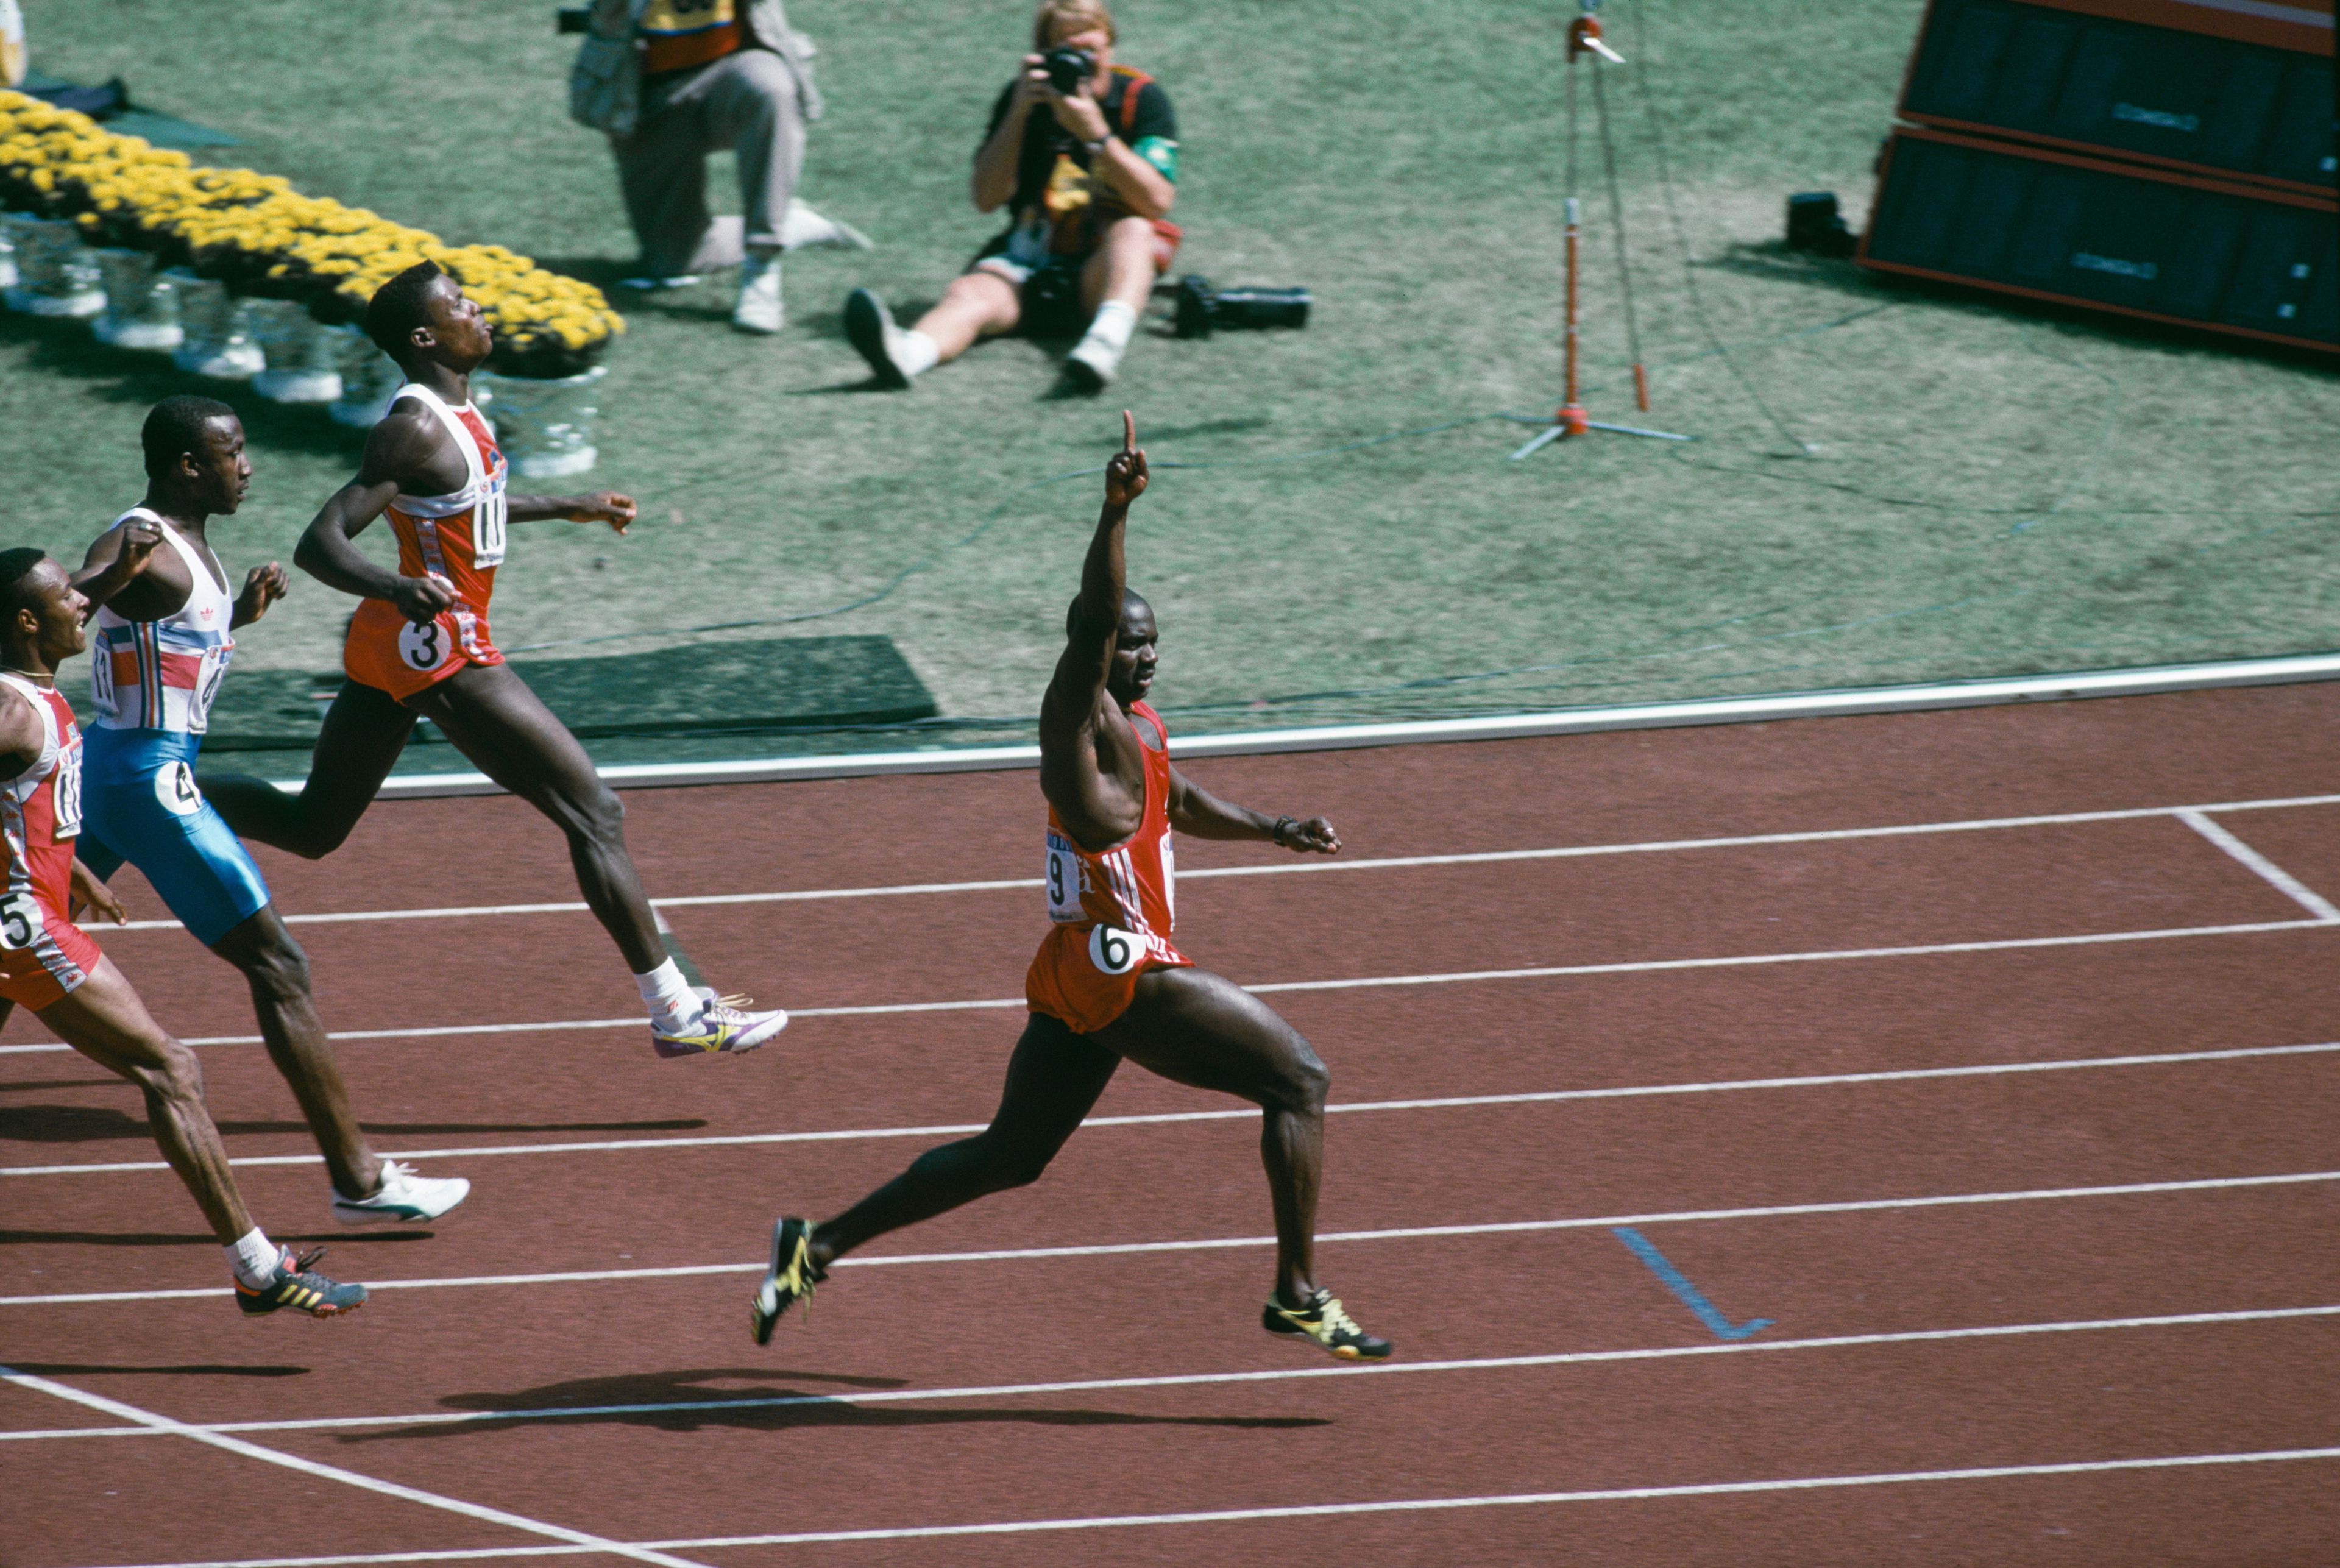 A világot talán Ben Johnson (jobbra) doppingügye rázta meg leginkább, 1988-ban  aranyérmes lett 100 méteren az olimpián, de kiderült, hogy doppingolt, 
aranyérmétől megfosztották és eltiltották /Fotó: Getty Images